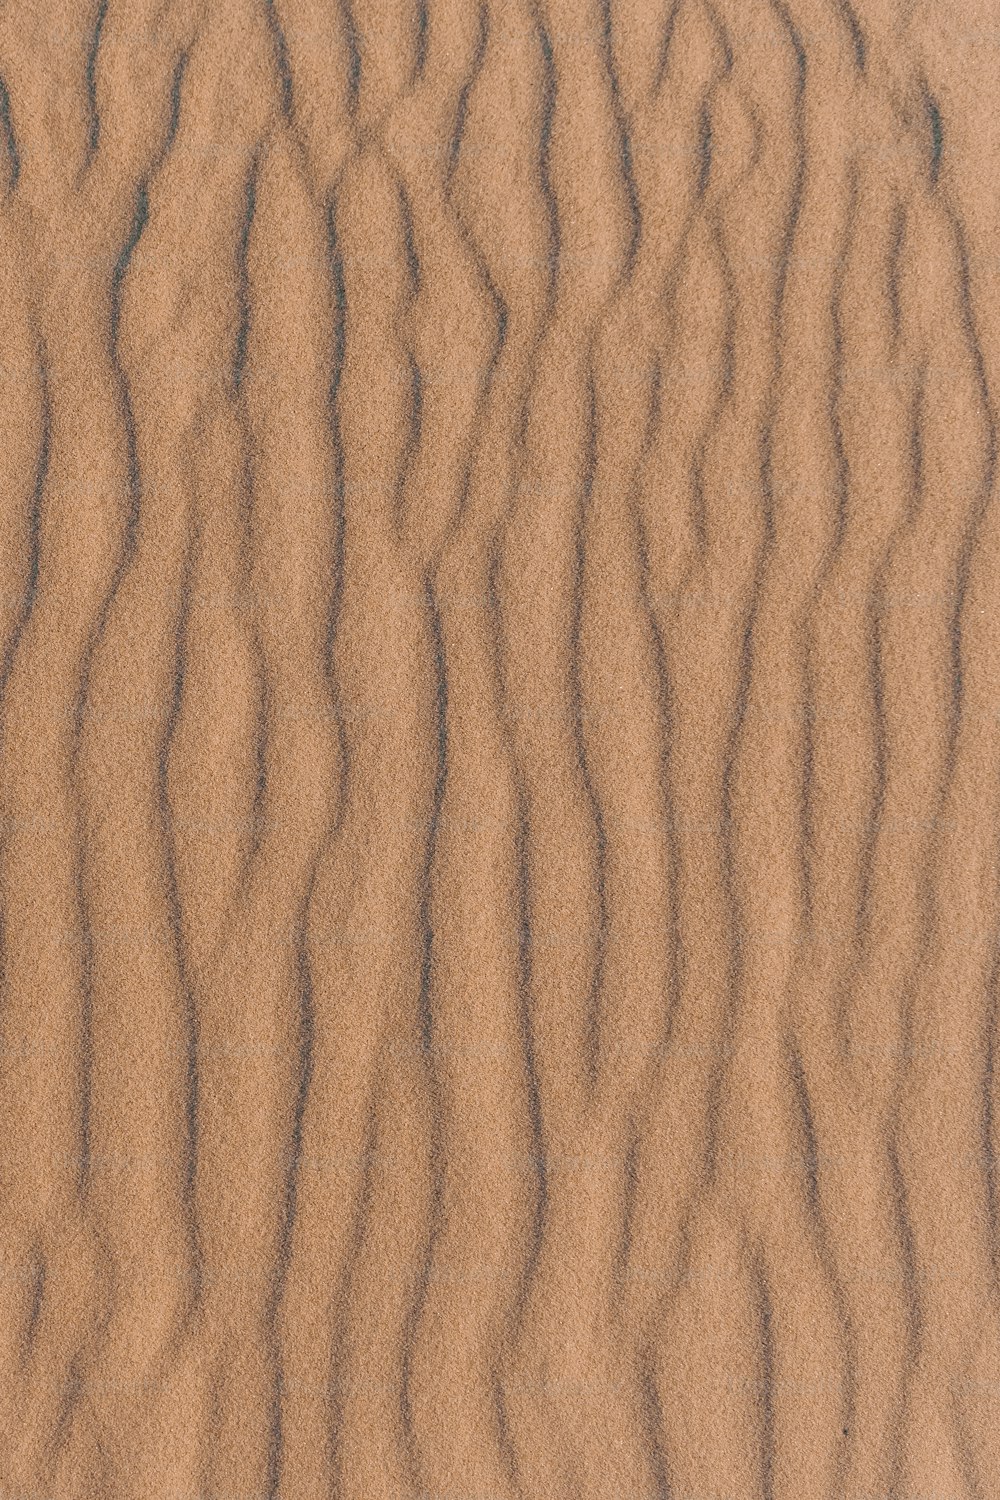 Un primo piano di una duna di sabbia con linee ondulate